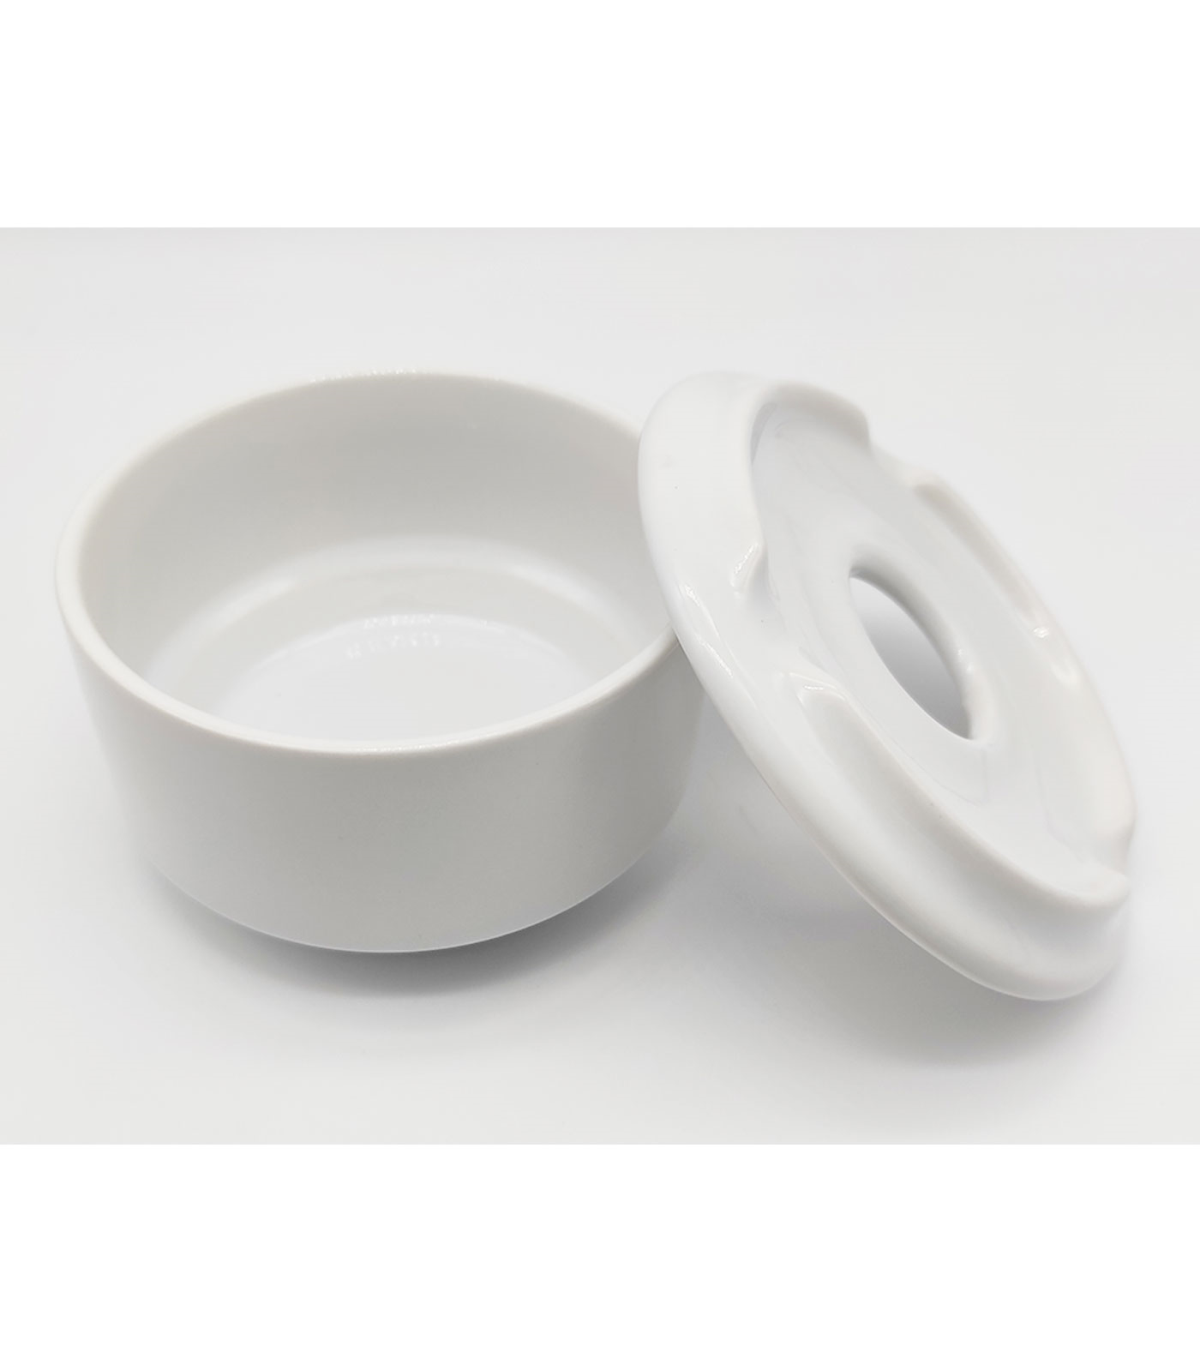 Tradineur - Cenicero redondo blanco de cerámica 9 x 6 cm, cuenco,  recipiente con tapa removible y muescas para cigarros, uso int